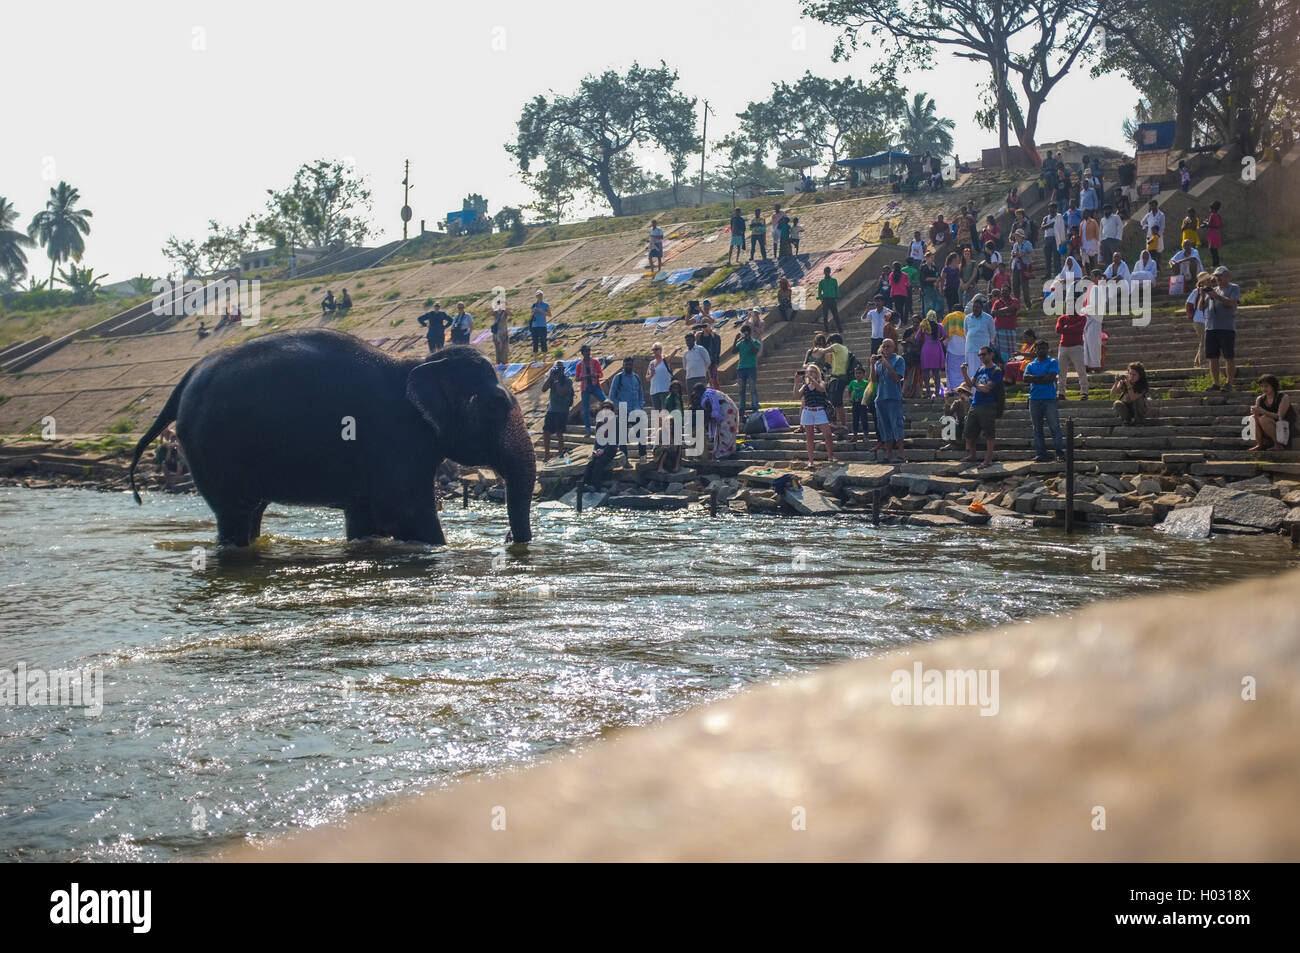 HAMPI, INDIA - 28 JANUARY 2015: Morning ritual of bathing Lakshmi, the temple elephant of Virupaksha Temple Stock Photo